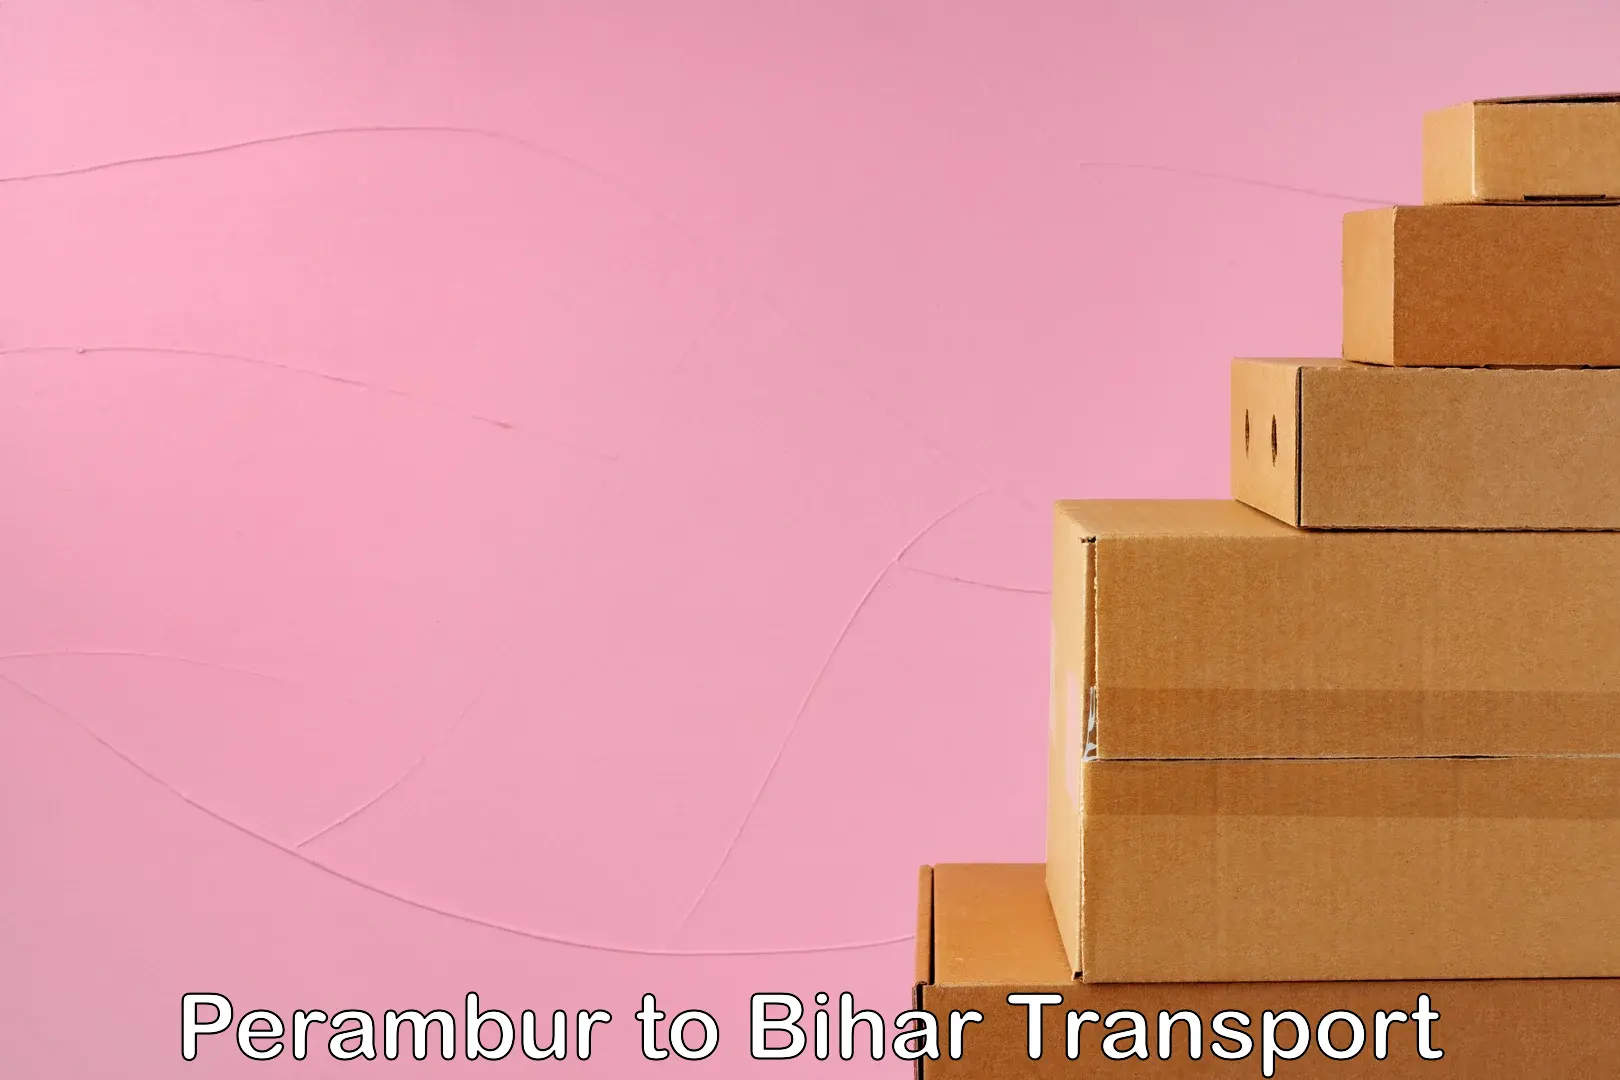 Delivery service Perambur to Bihar